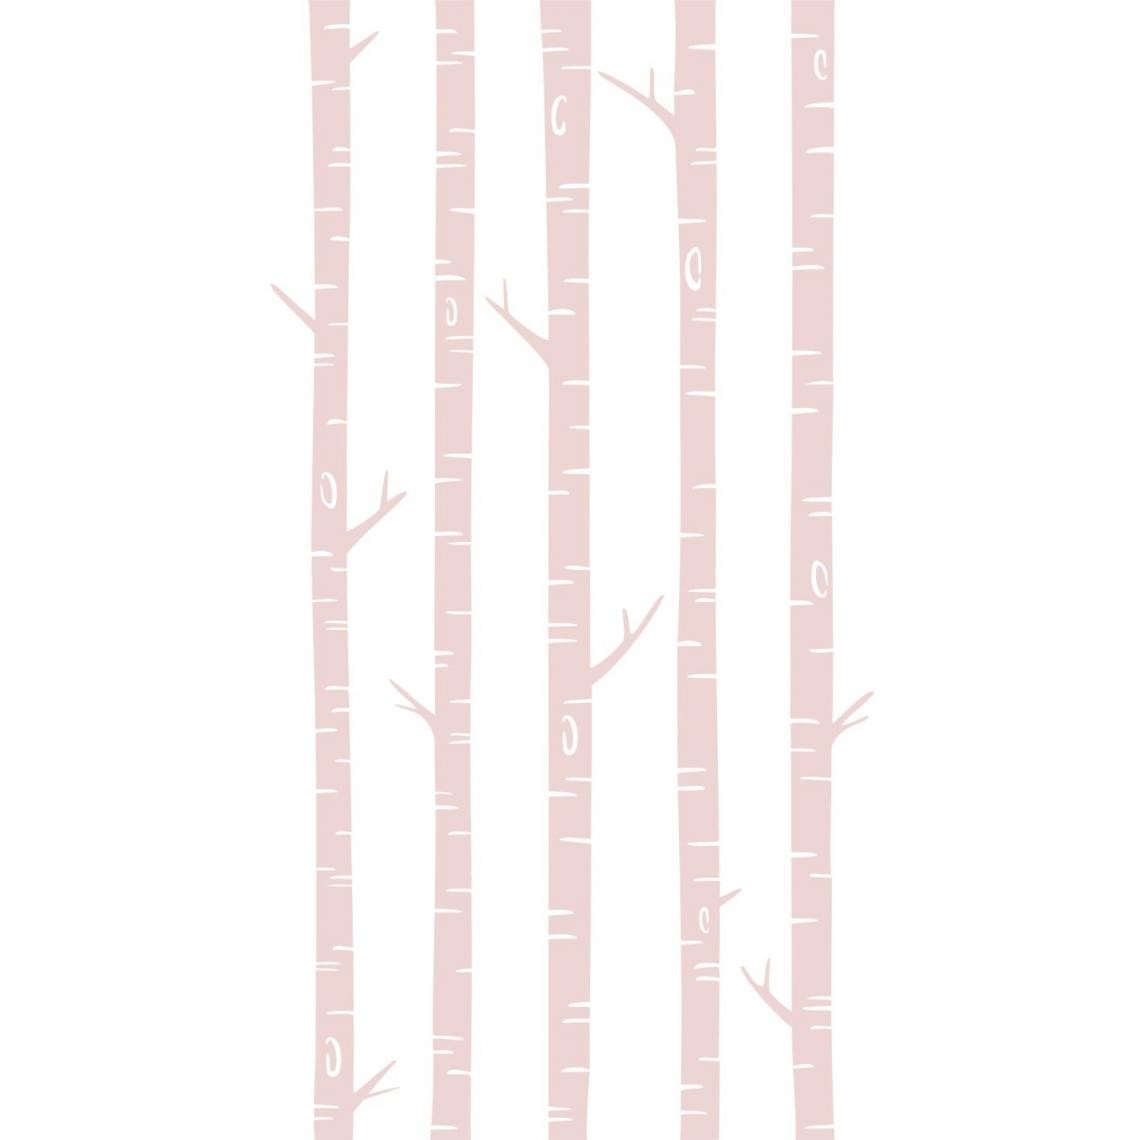 ESTAhome - ESTAhome papier peint panoramique troncs de bouleau rose clair - 158927 - 1.5 x 2.79 m. - Papier peint